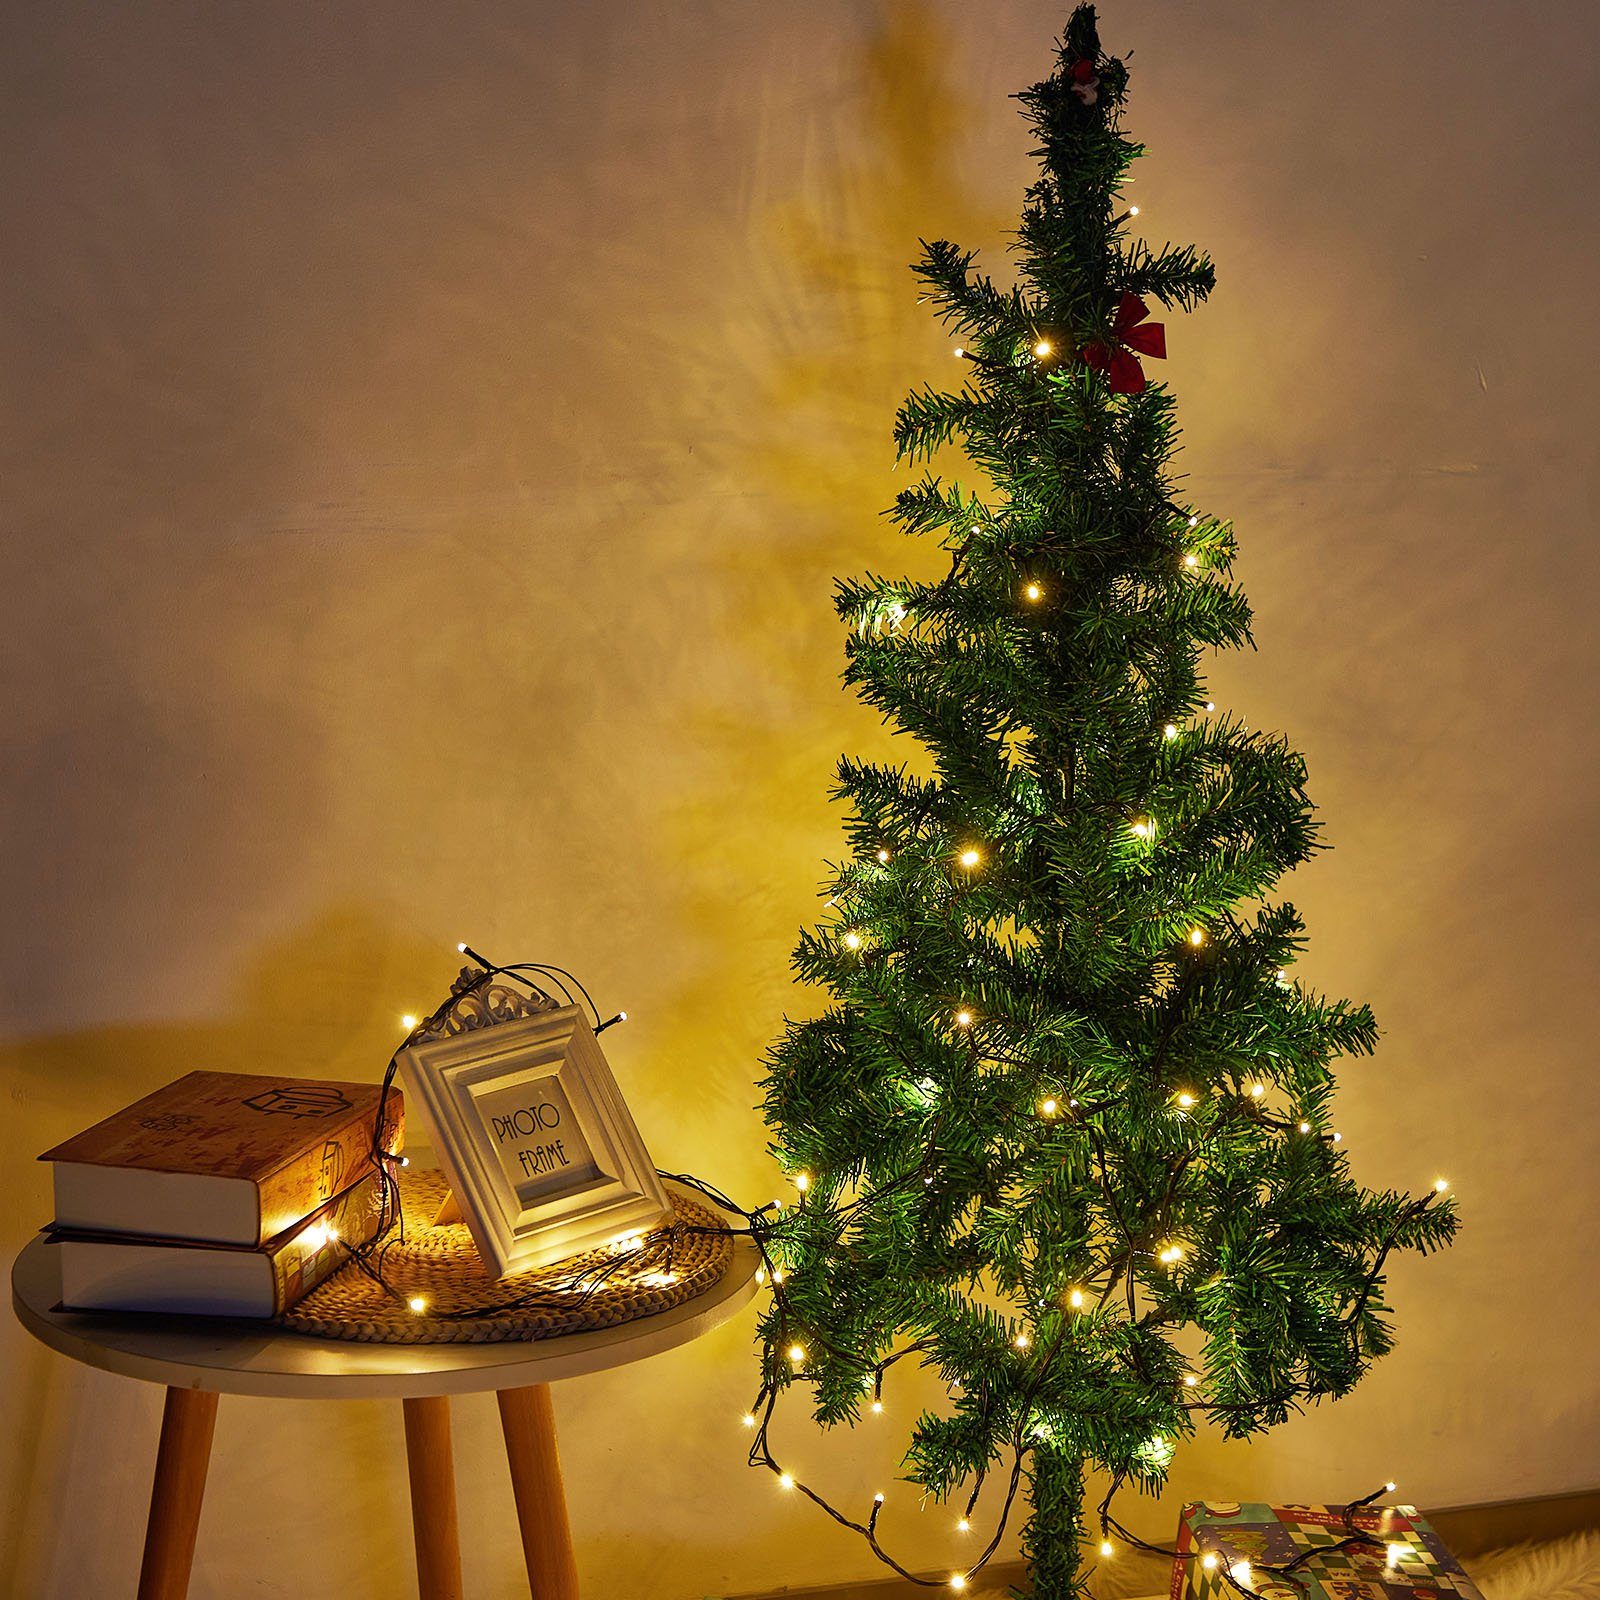 8 Schwarzer Rosnek Weihnachtsbaum, für LED-Lichterkette 20-100M, 31V, Timer, modi, Garten, Wasserdicht, Speicherfunktion, Draht